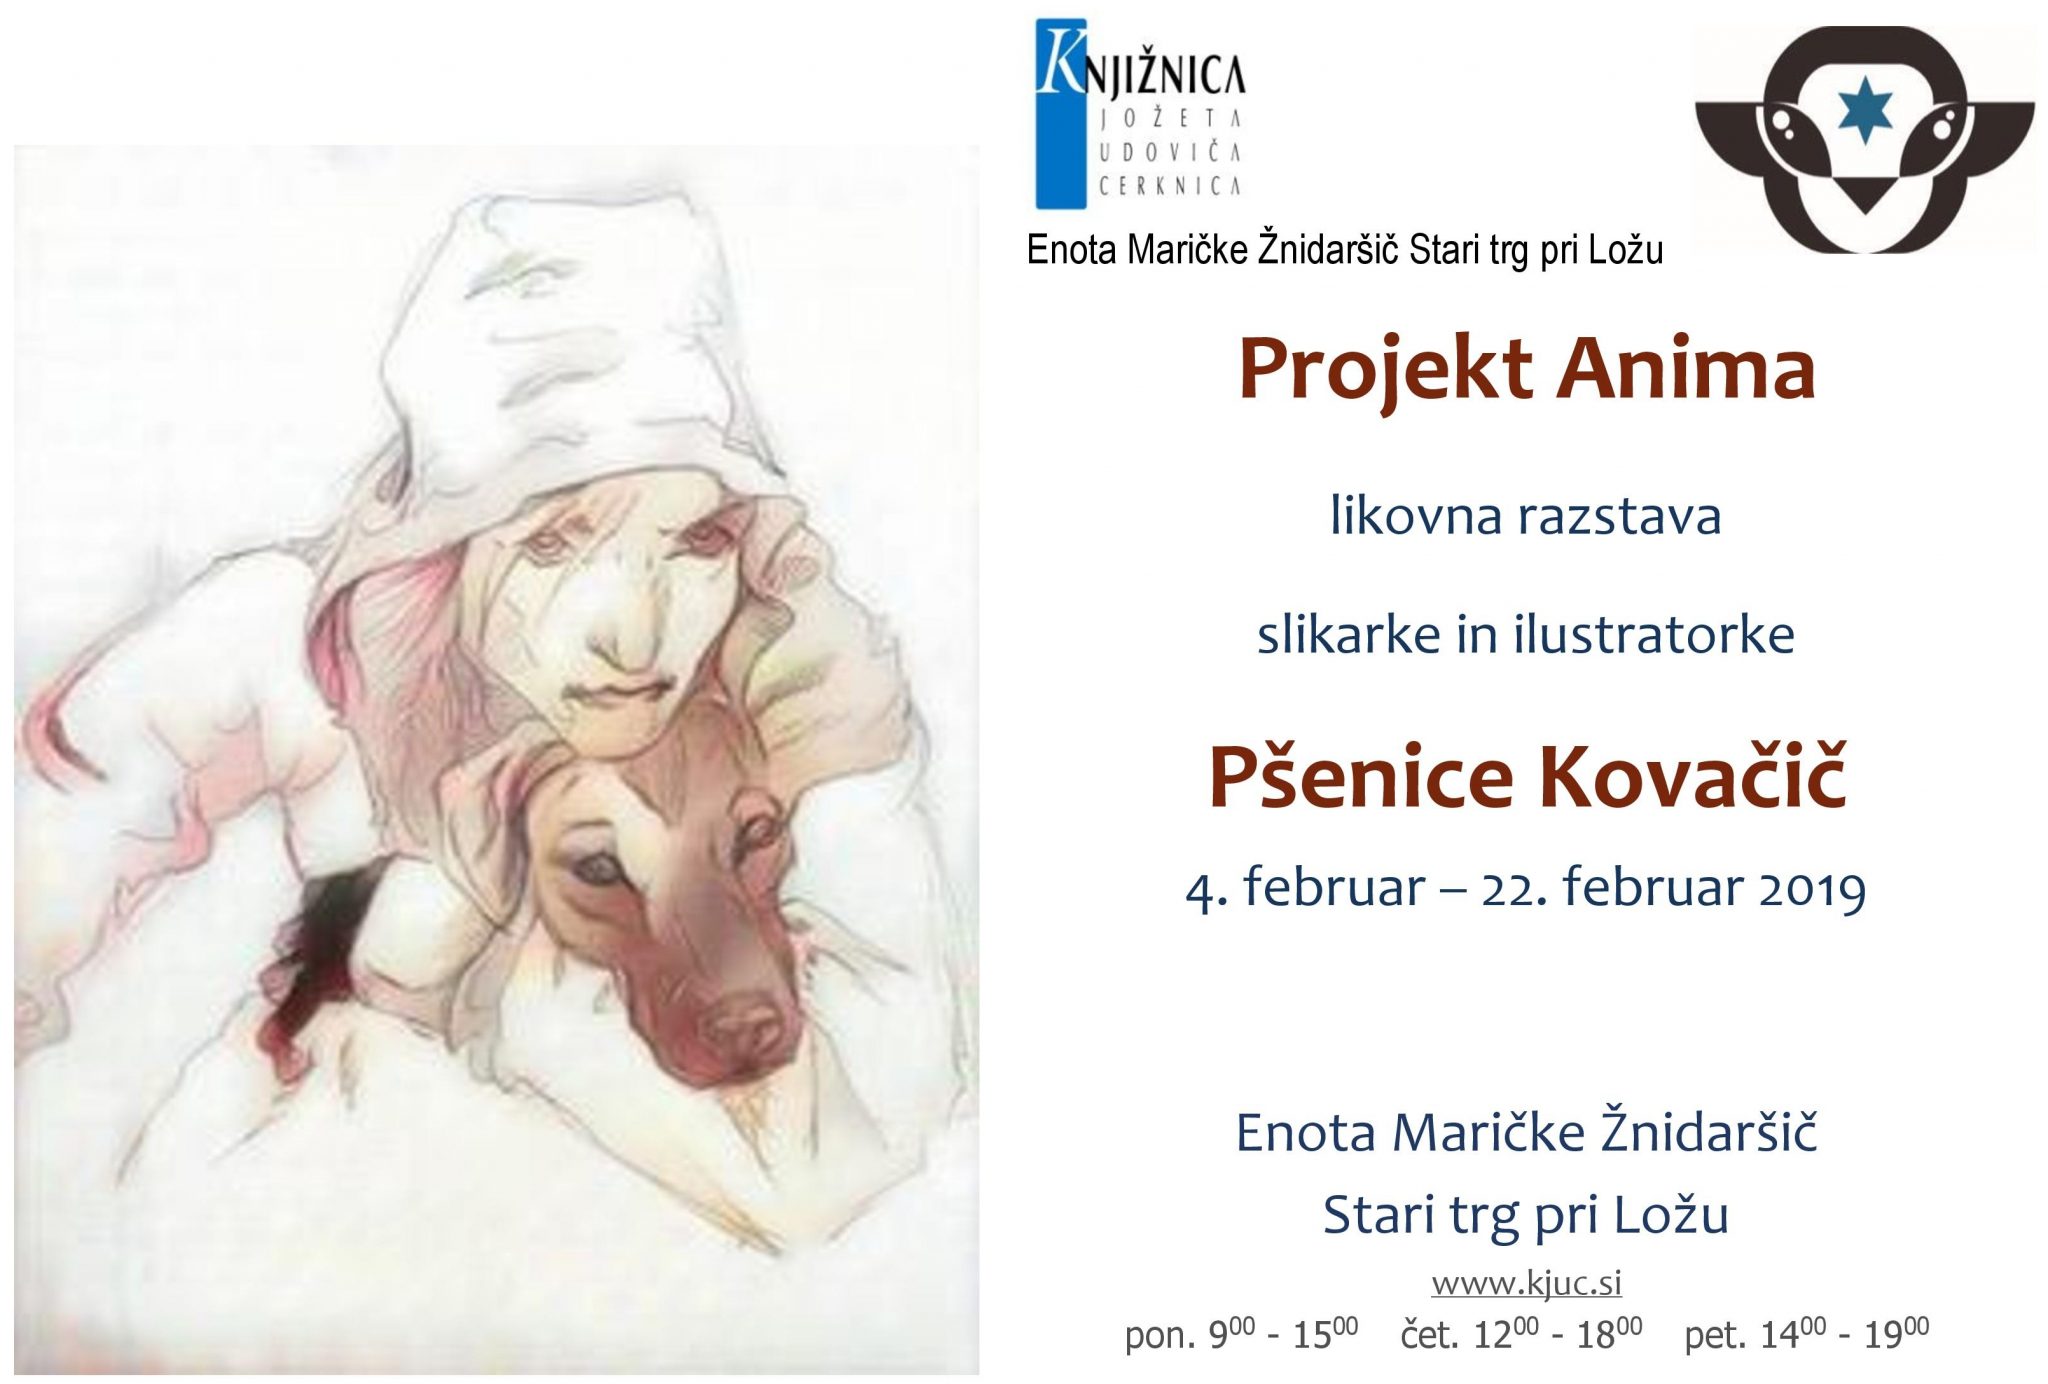 cover 1 - Projekt Anima - likovna razstava slikarke in ilustratorke Pšenice Kovačič